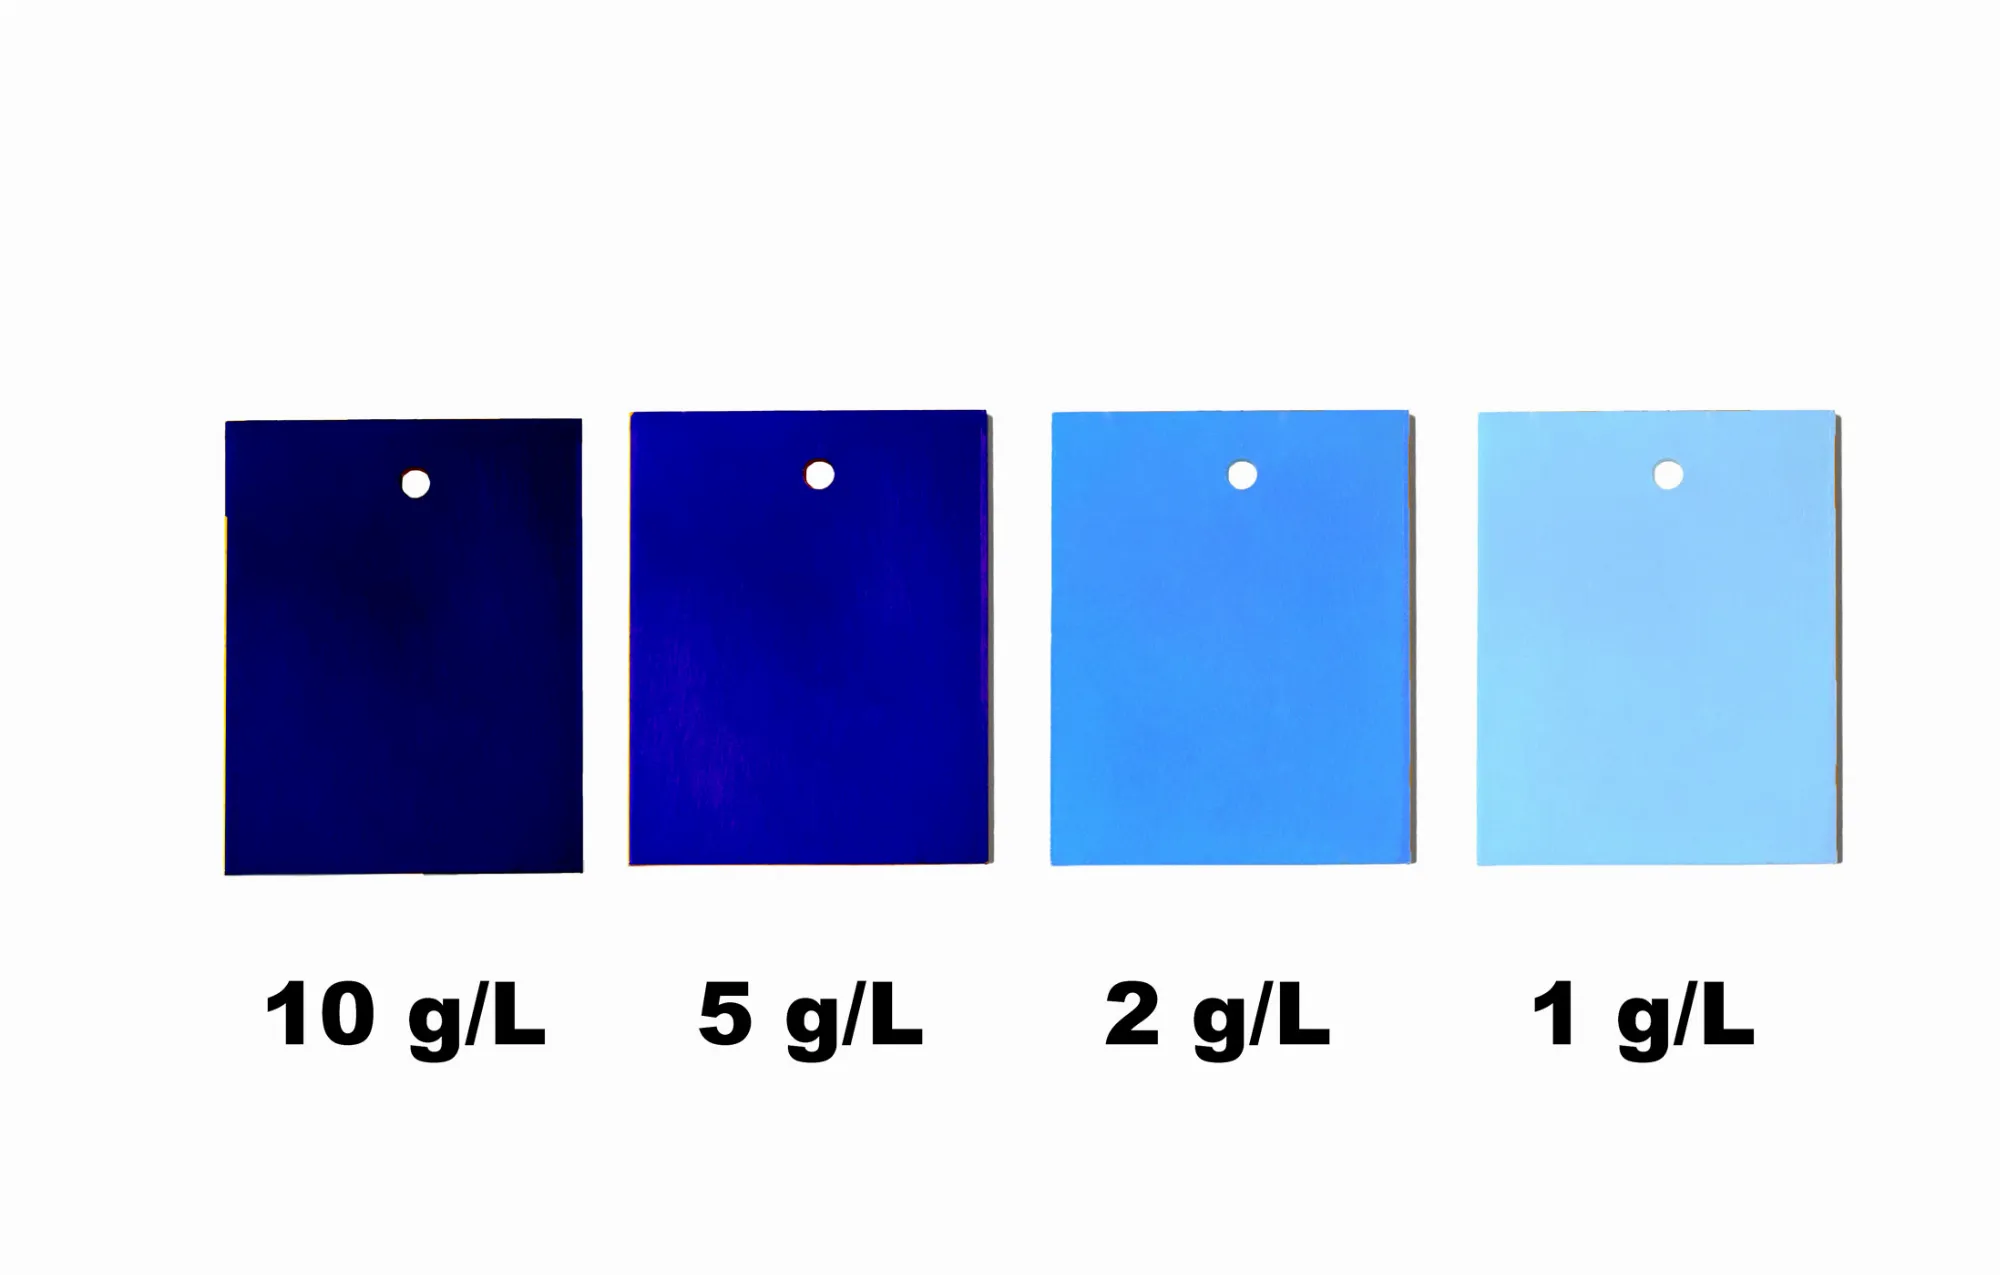 Aluminium einfärben - Blau eloxieren in verschiedenen Blautönen - Anodisieren von Aluminium in blauer Farbe